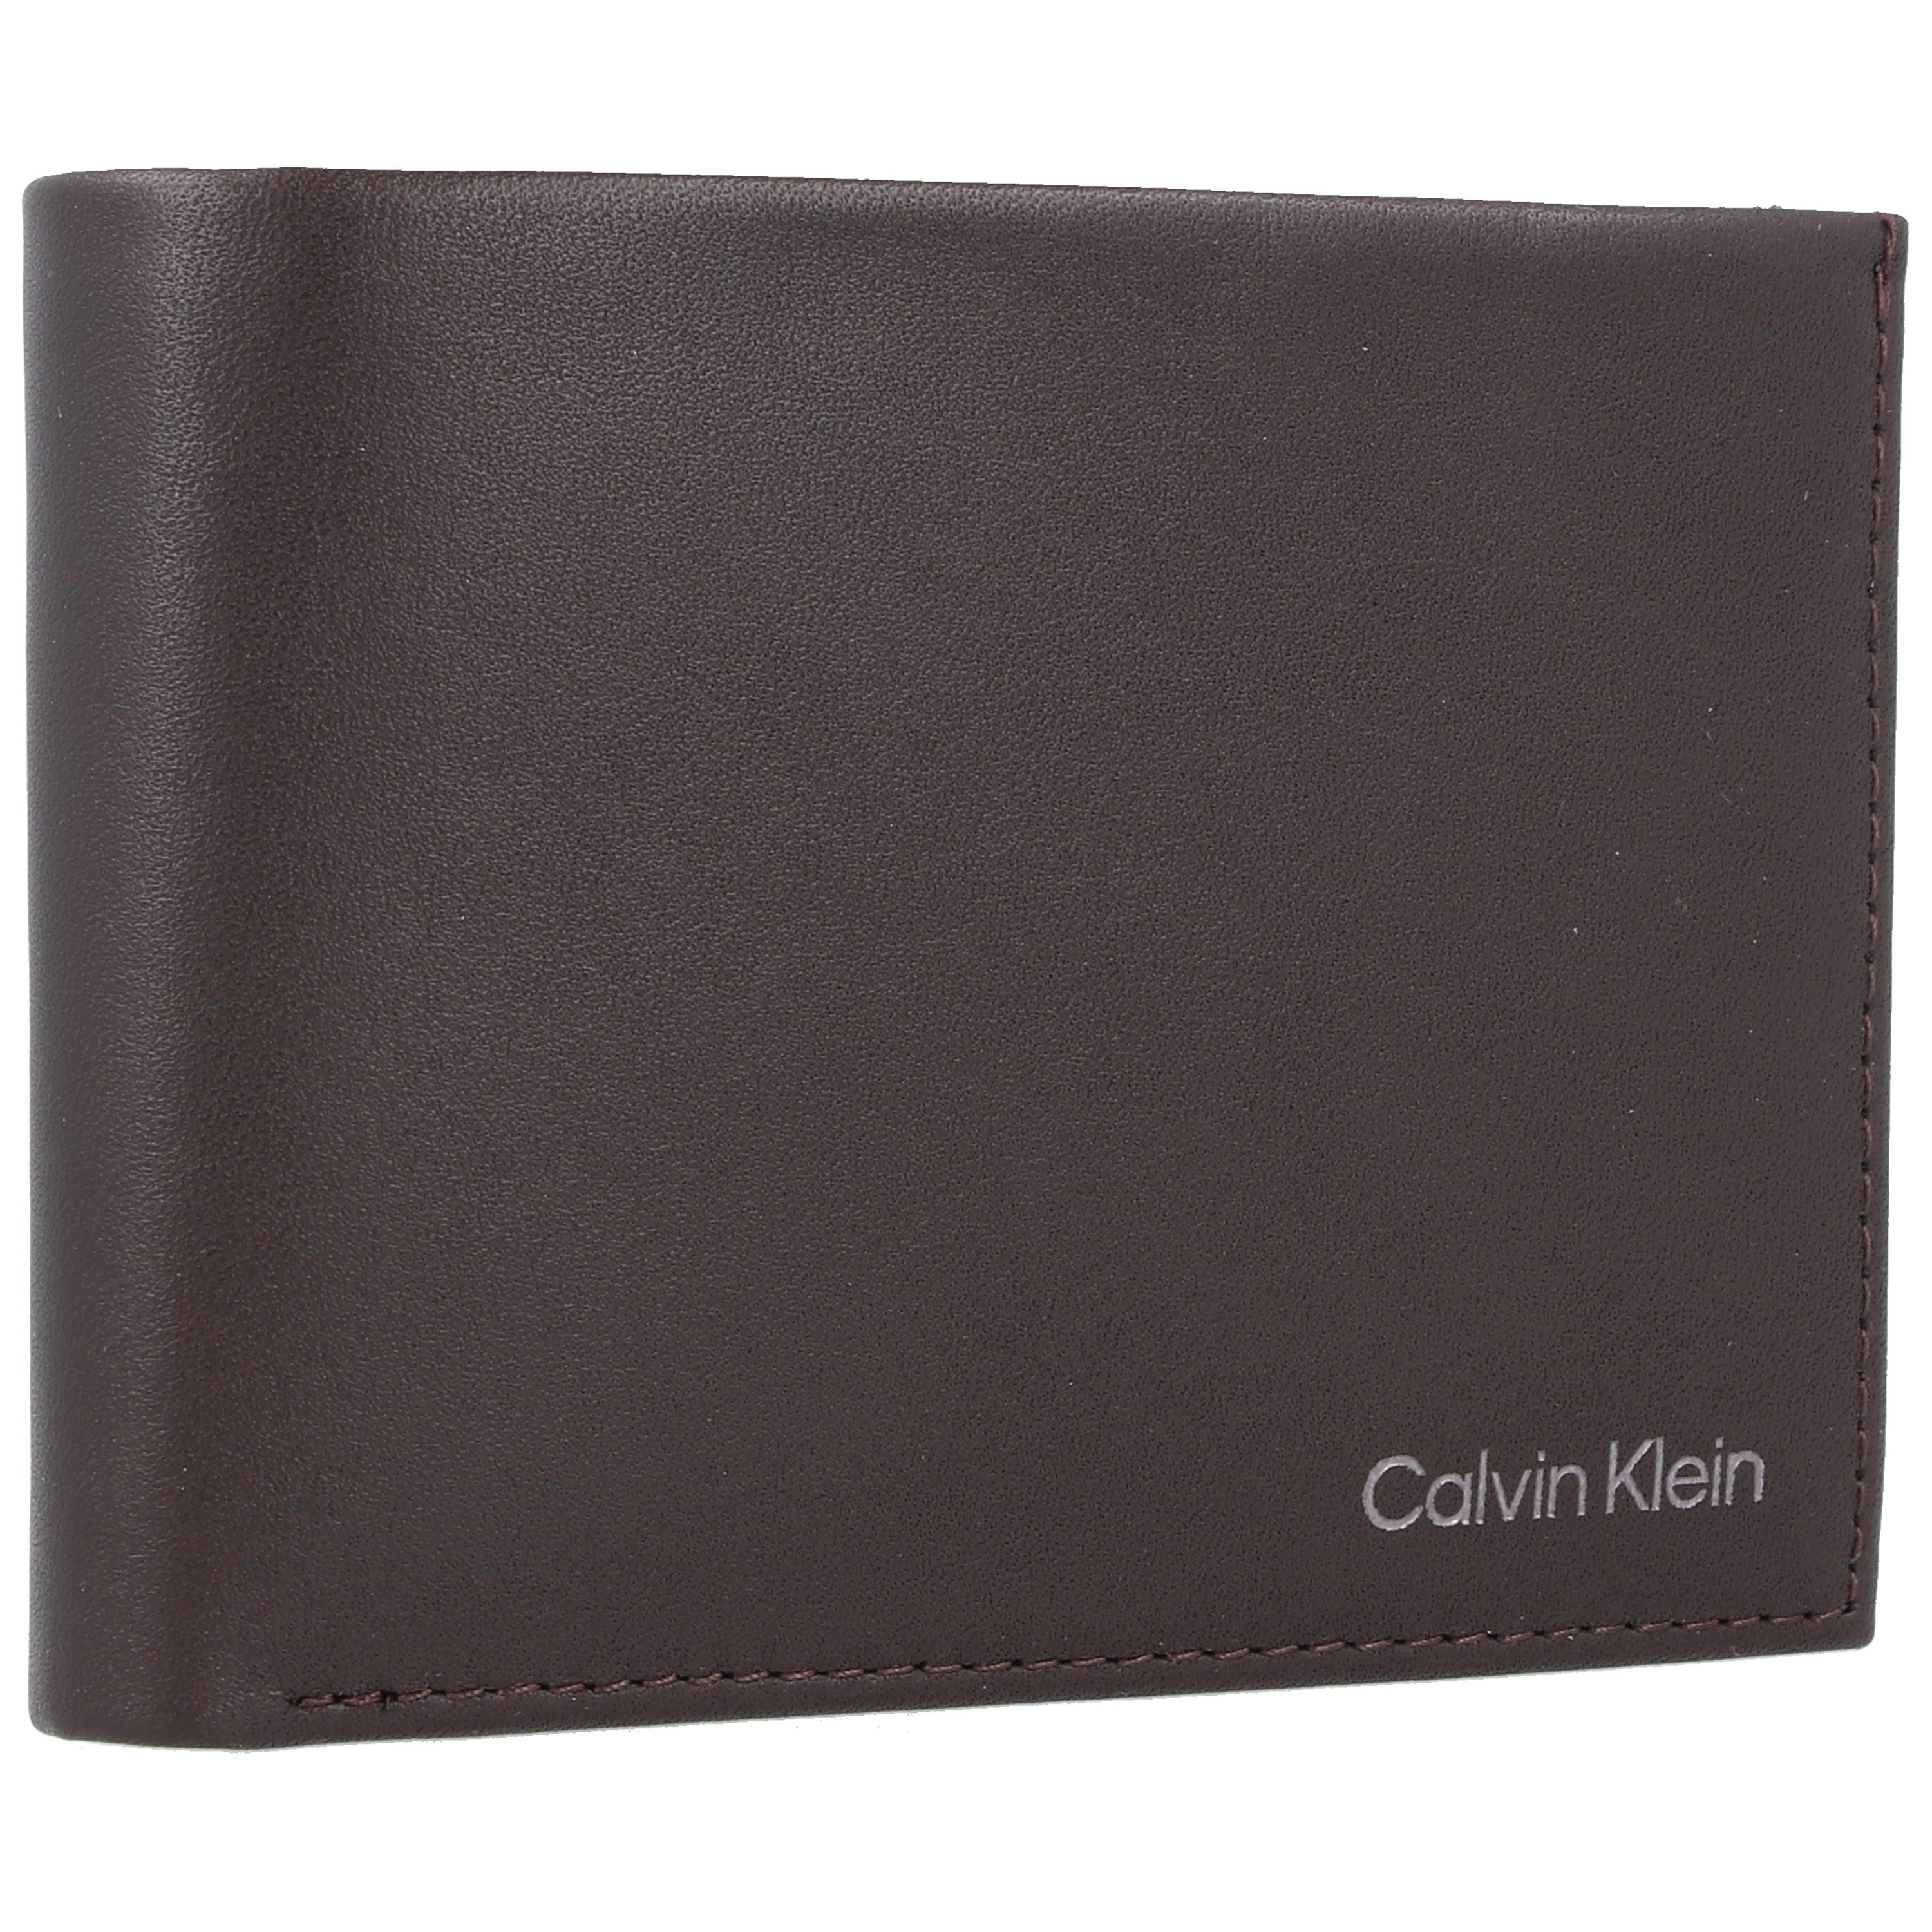 Accessori Accessori Calvin Klein Portamonete in Marrone Scuro 